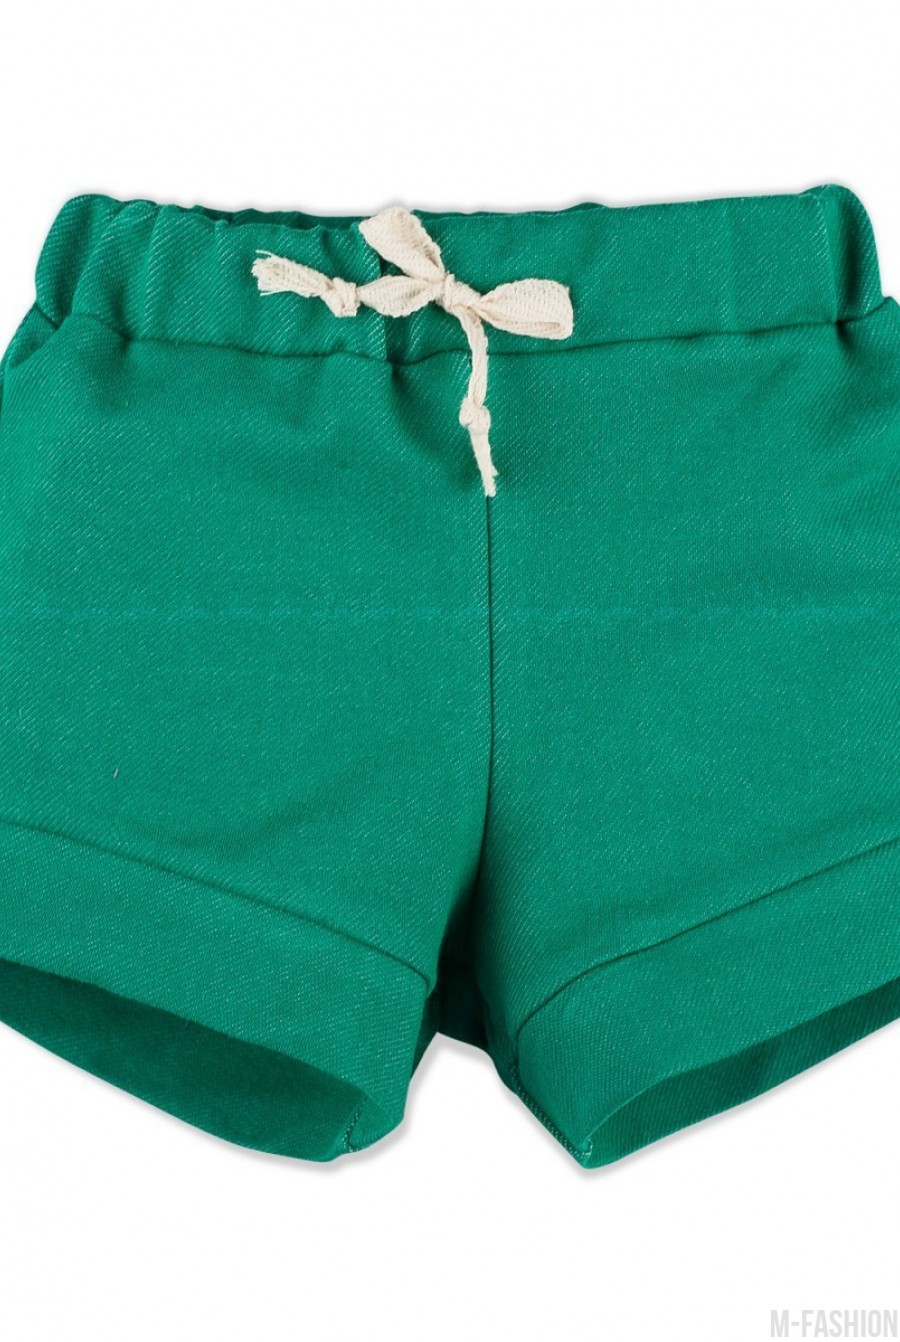 Зеленые джинсовые шорты с подворотами - Фото 1